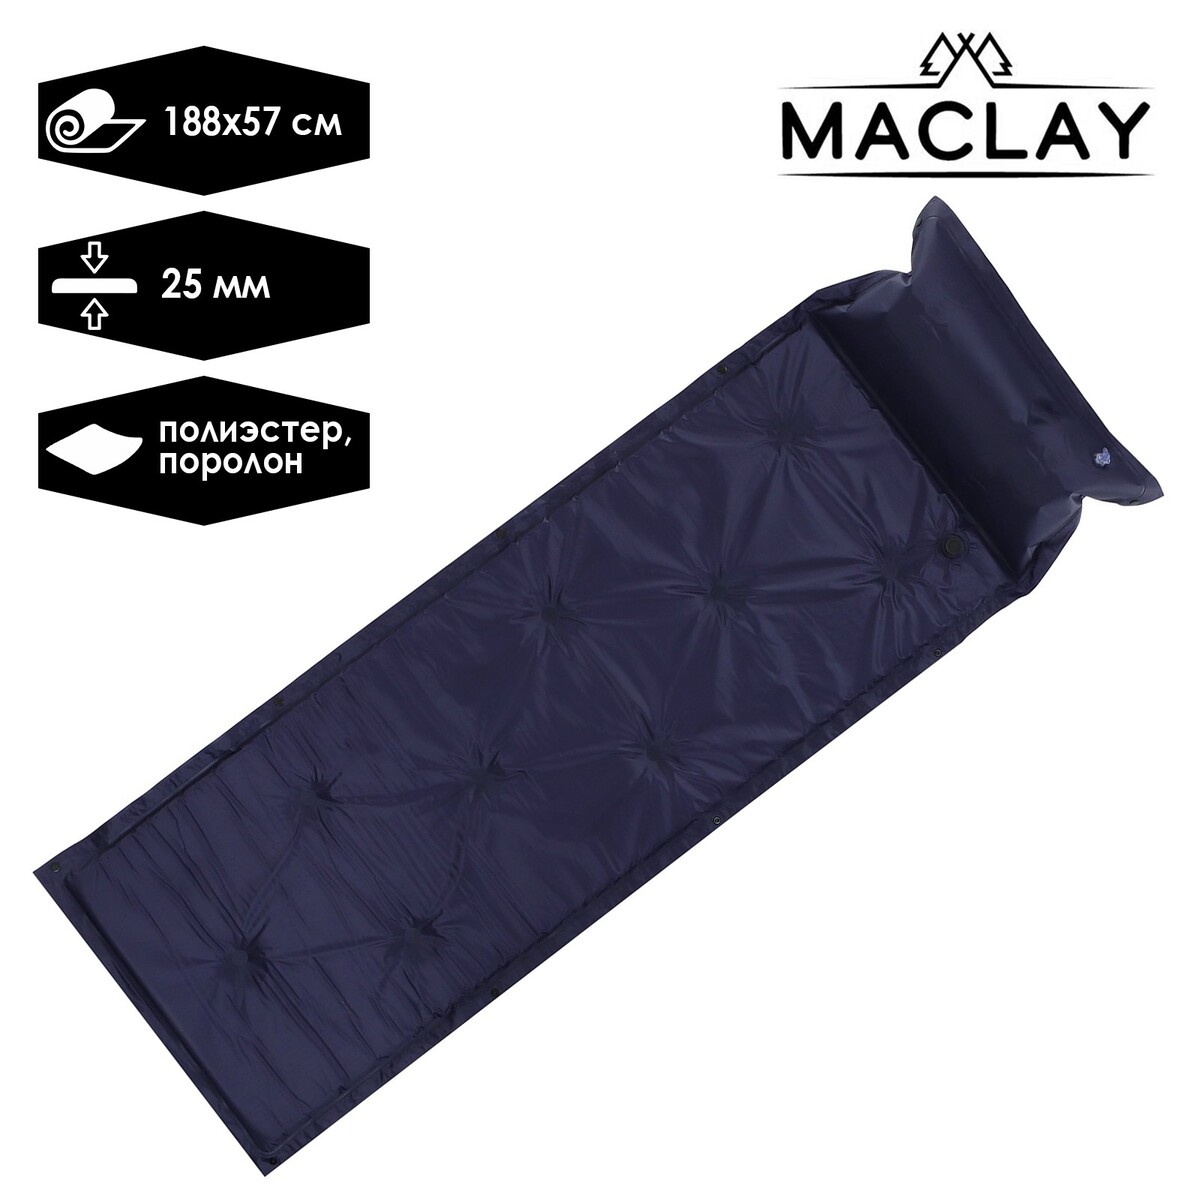 Коврик туристический maclay, 188х57х2.5 см, цвет синий коврик гимнастический body form bf ym03 173 61 0 3 см синий